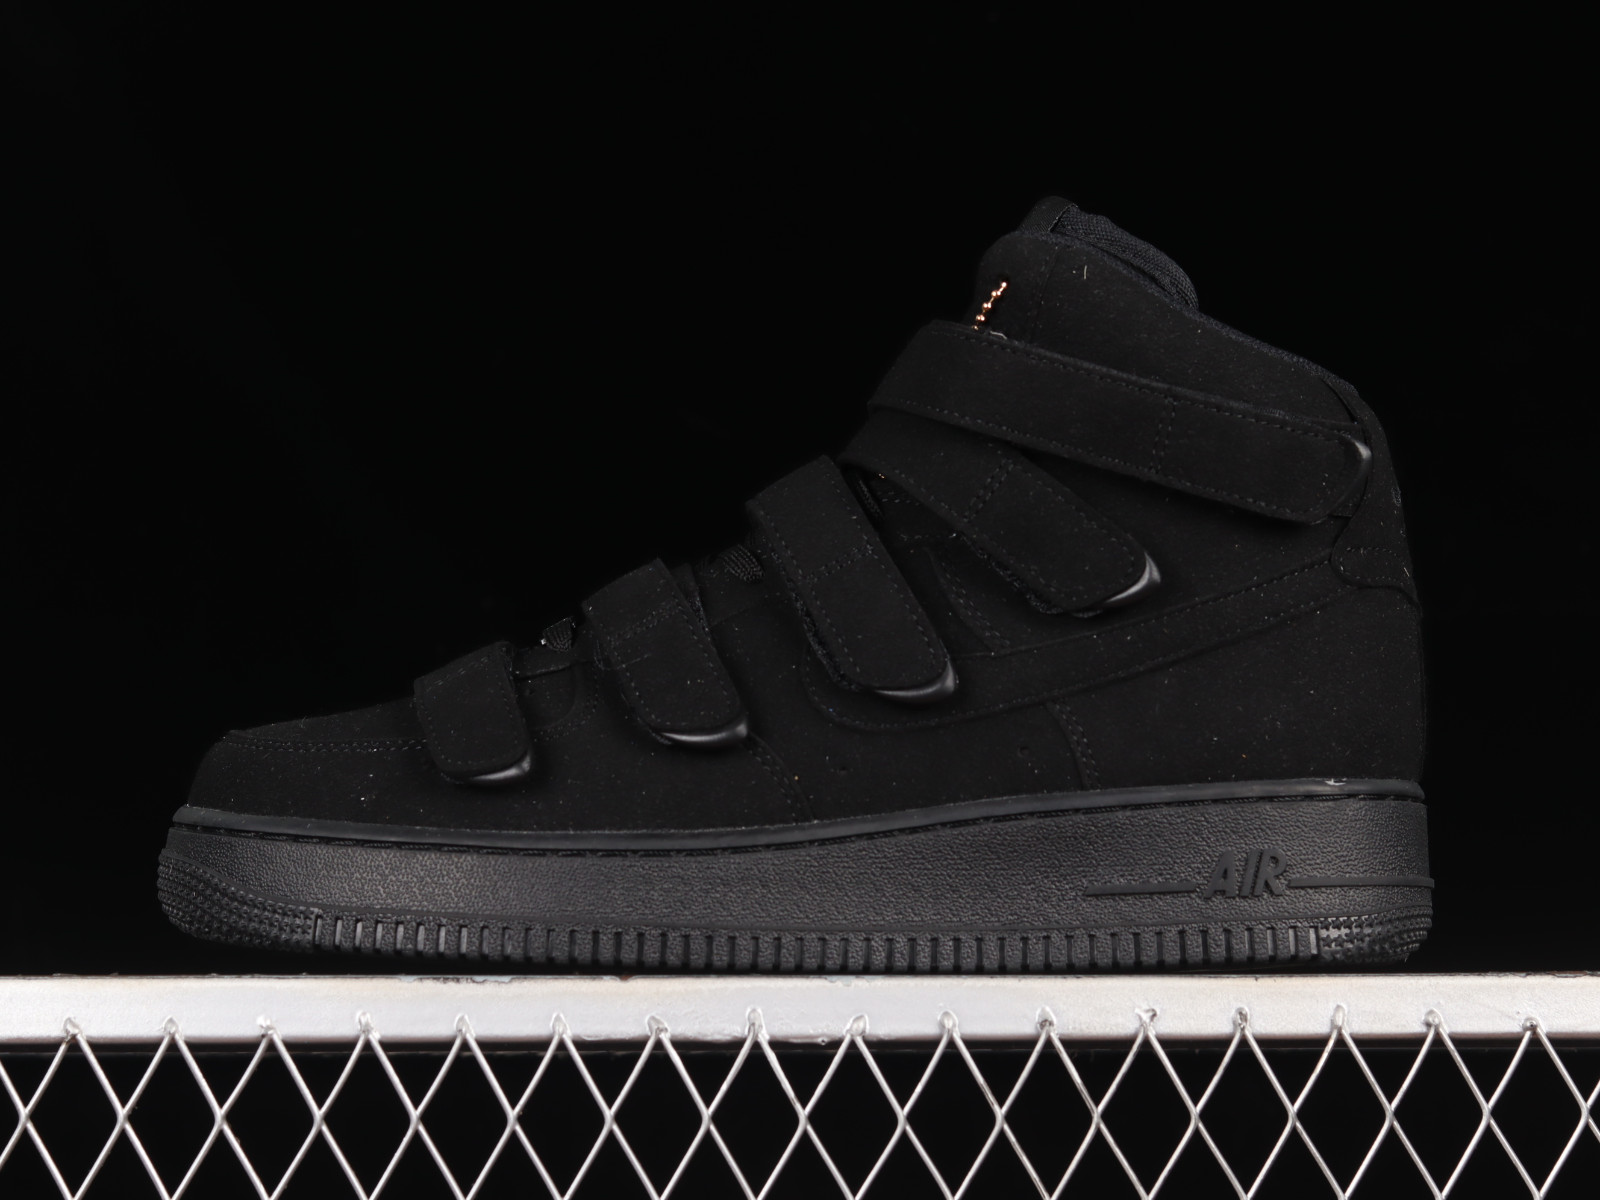 Nike Air Force 1 '07 Sneakers in Triple Black